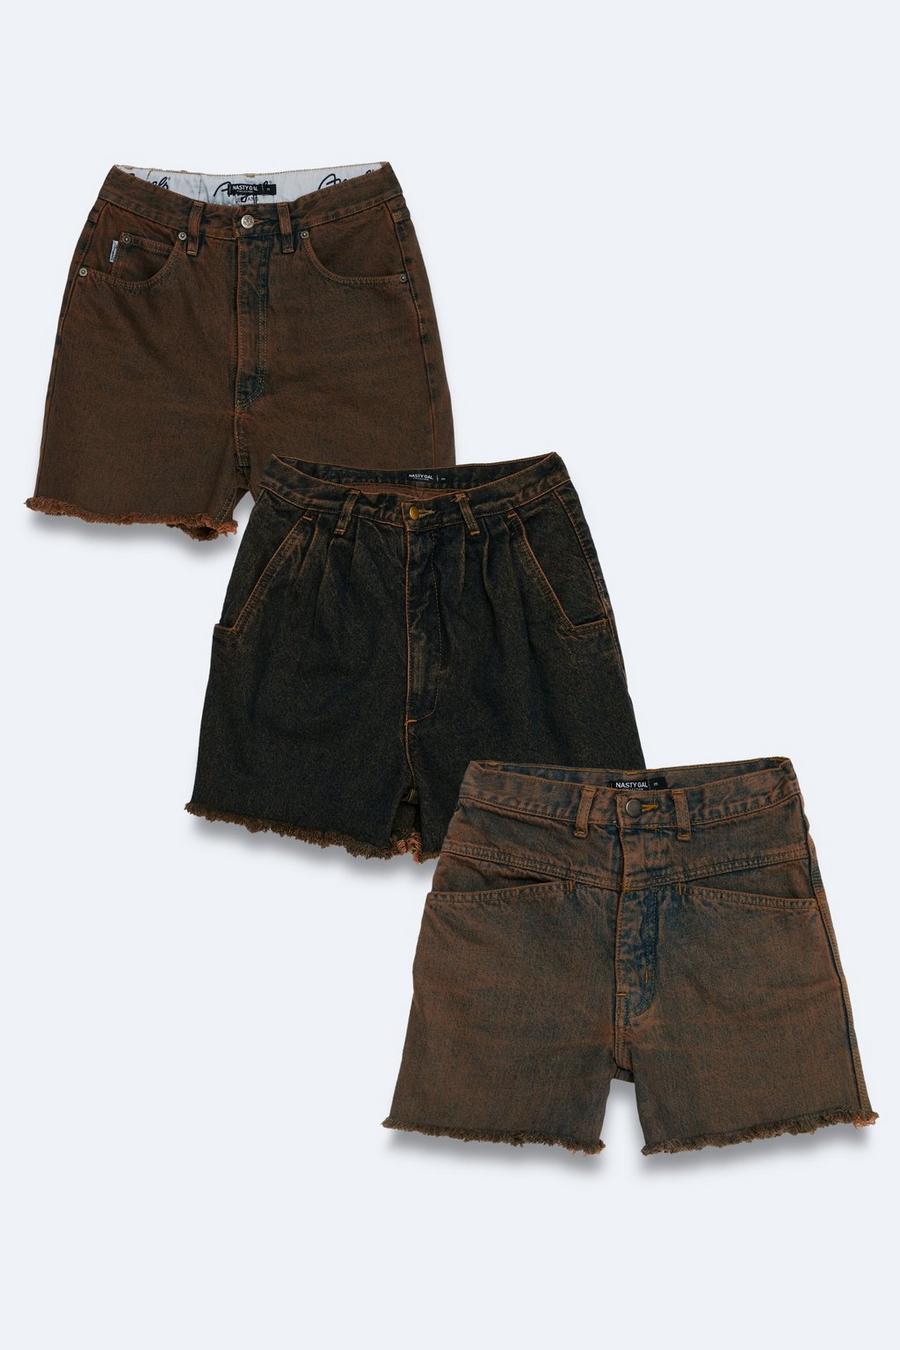 Vintage Raw Cut Denim Shorts